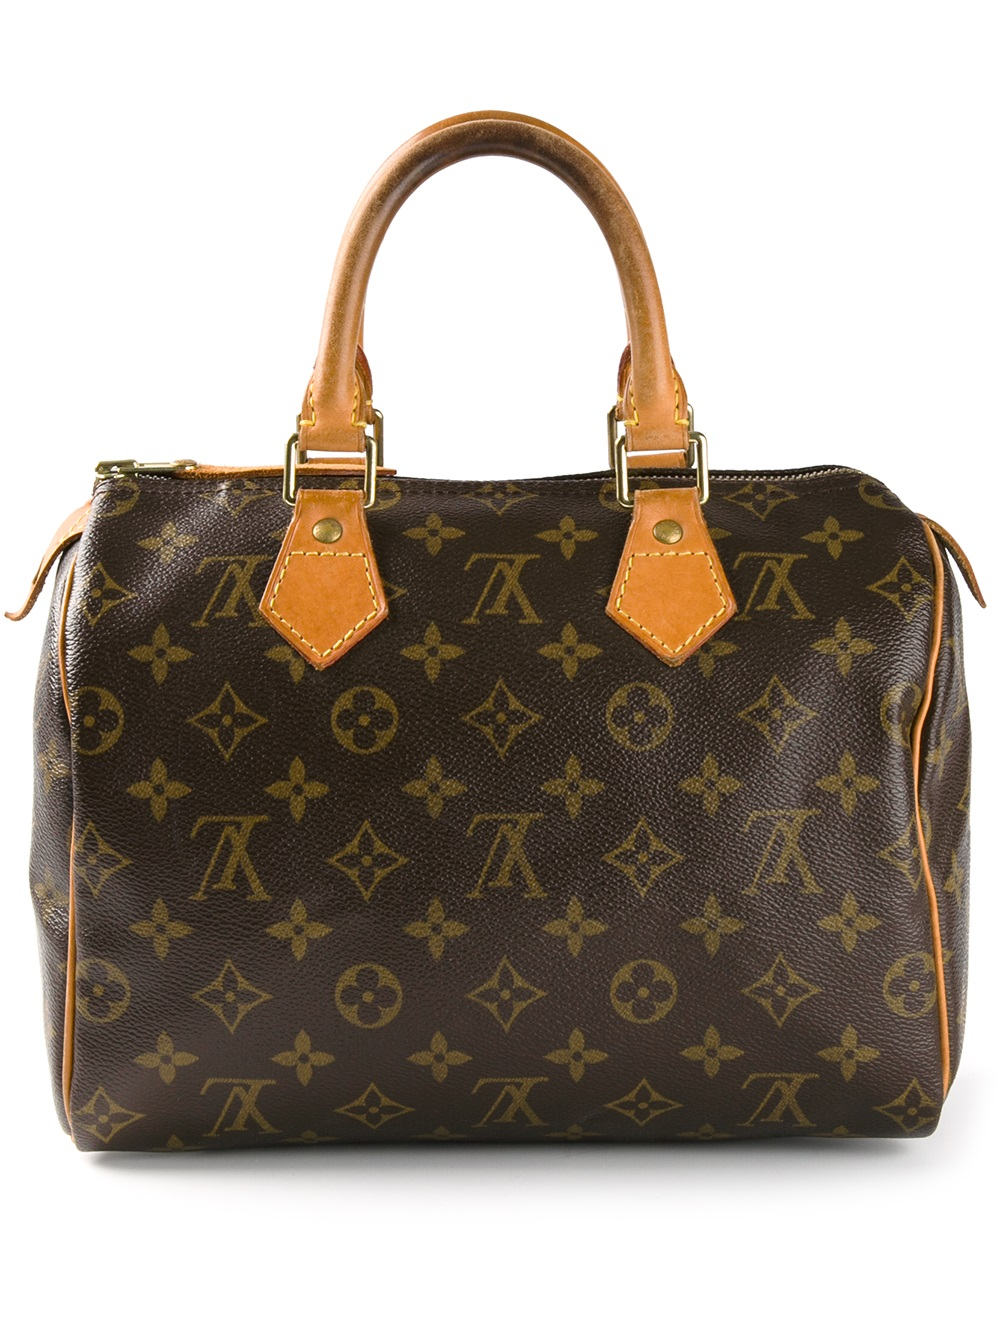 Lyst - Louis Vuitton Speedy 25 Monogrammed Bag in Brown